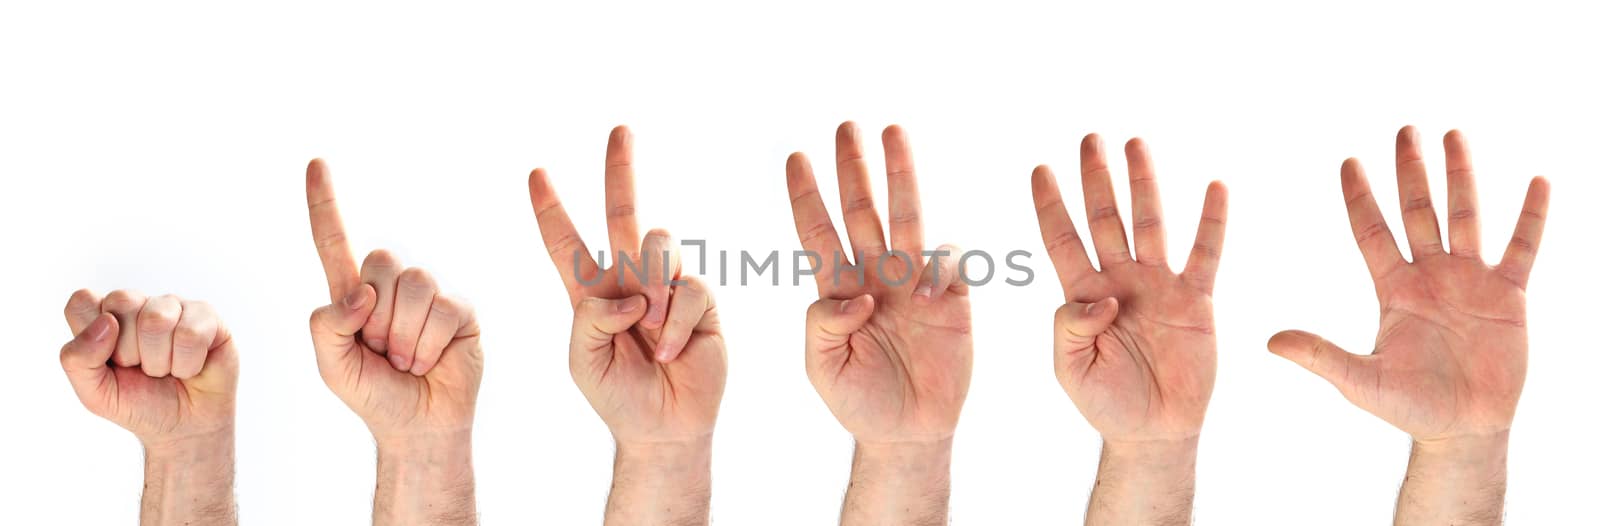 five hands